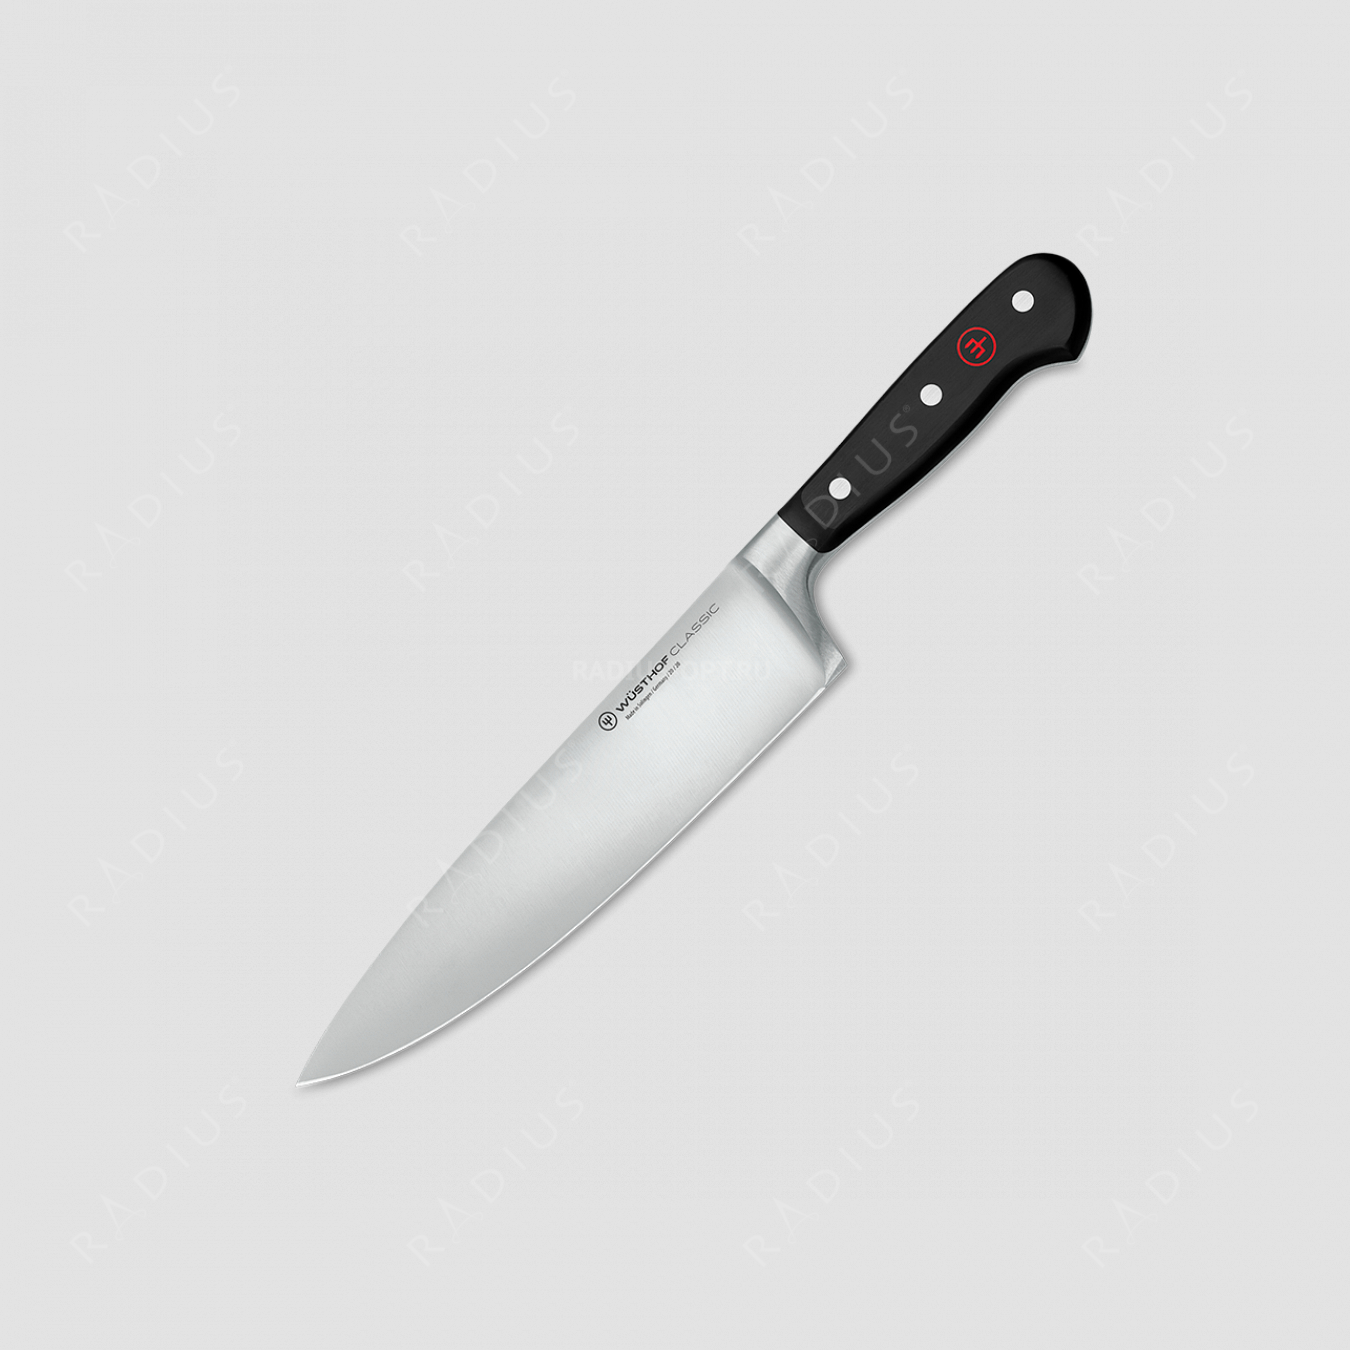 Профессиональный поварской кухонный нож 20 см, серия Classic, WUESTHOF, Золинген, Германия